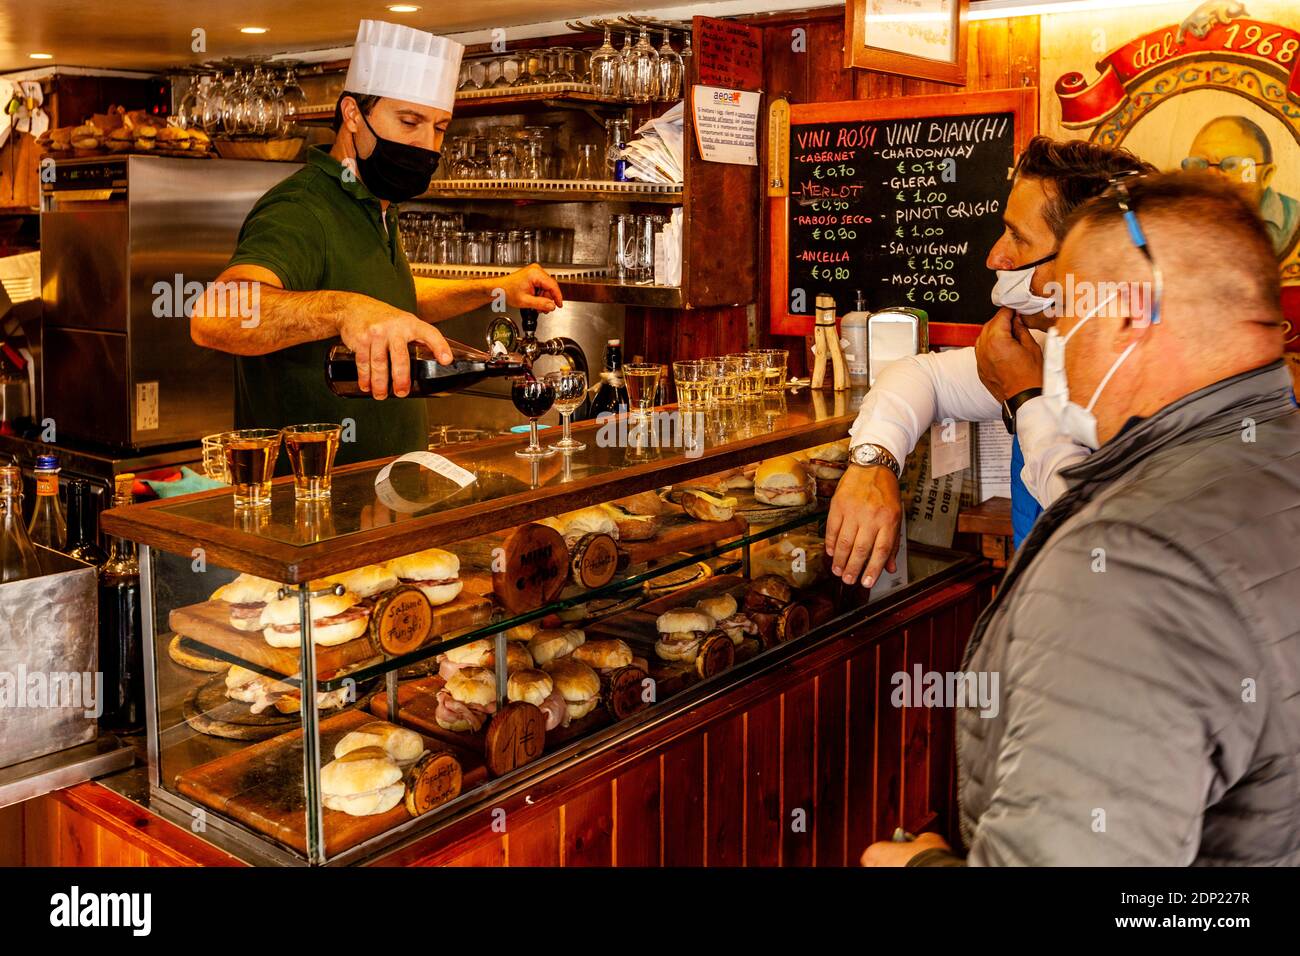 Einheimische kaufen Sandwiches und Wein in EINER Bar, Santa Croce, Venedig, Italien. Stockfoto